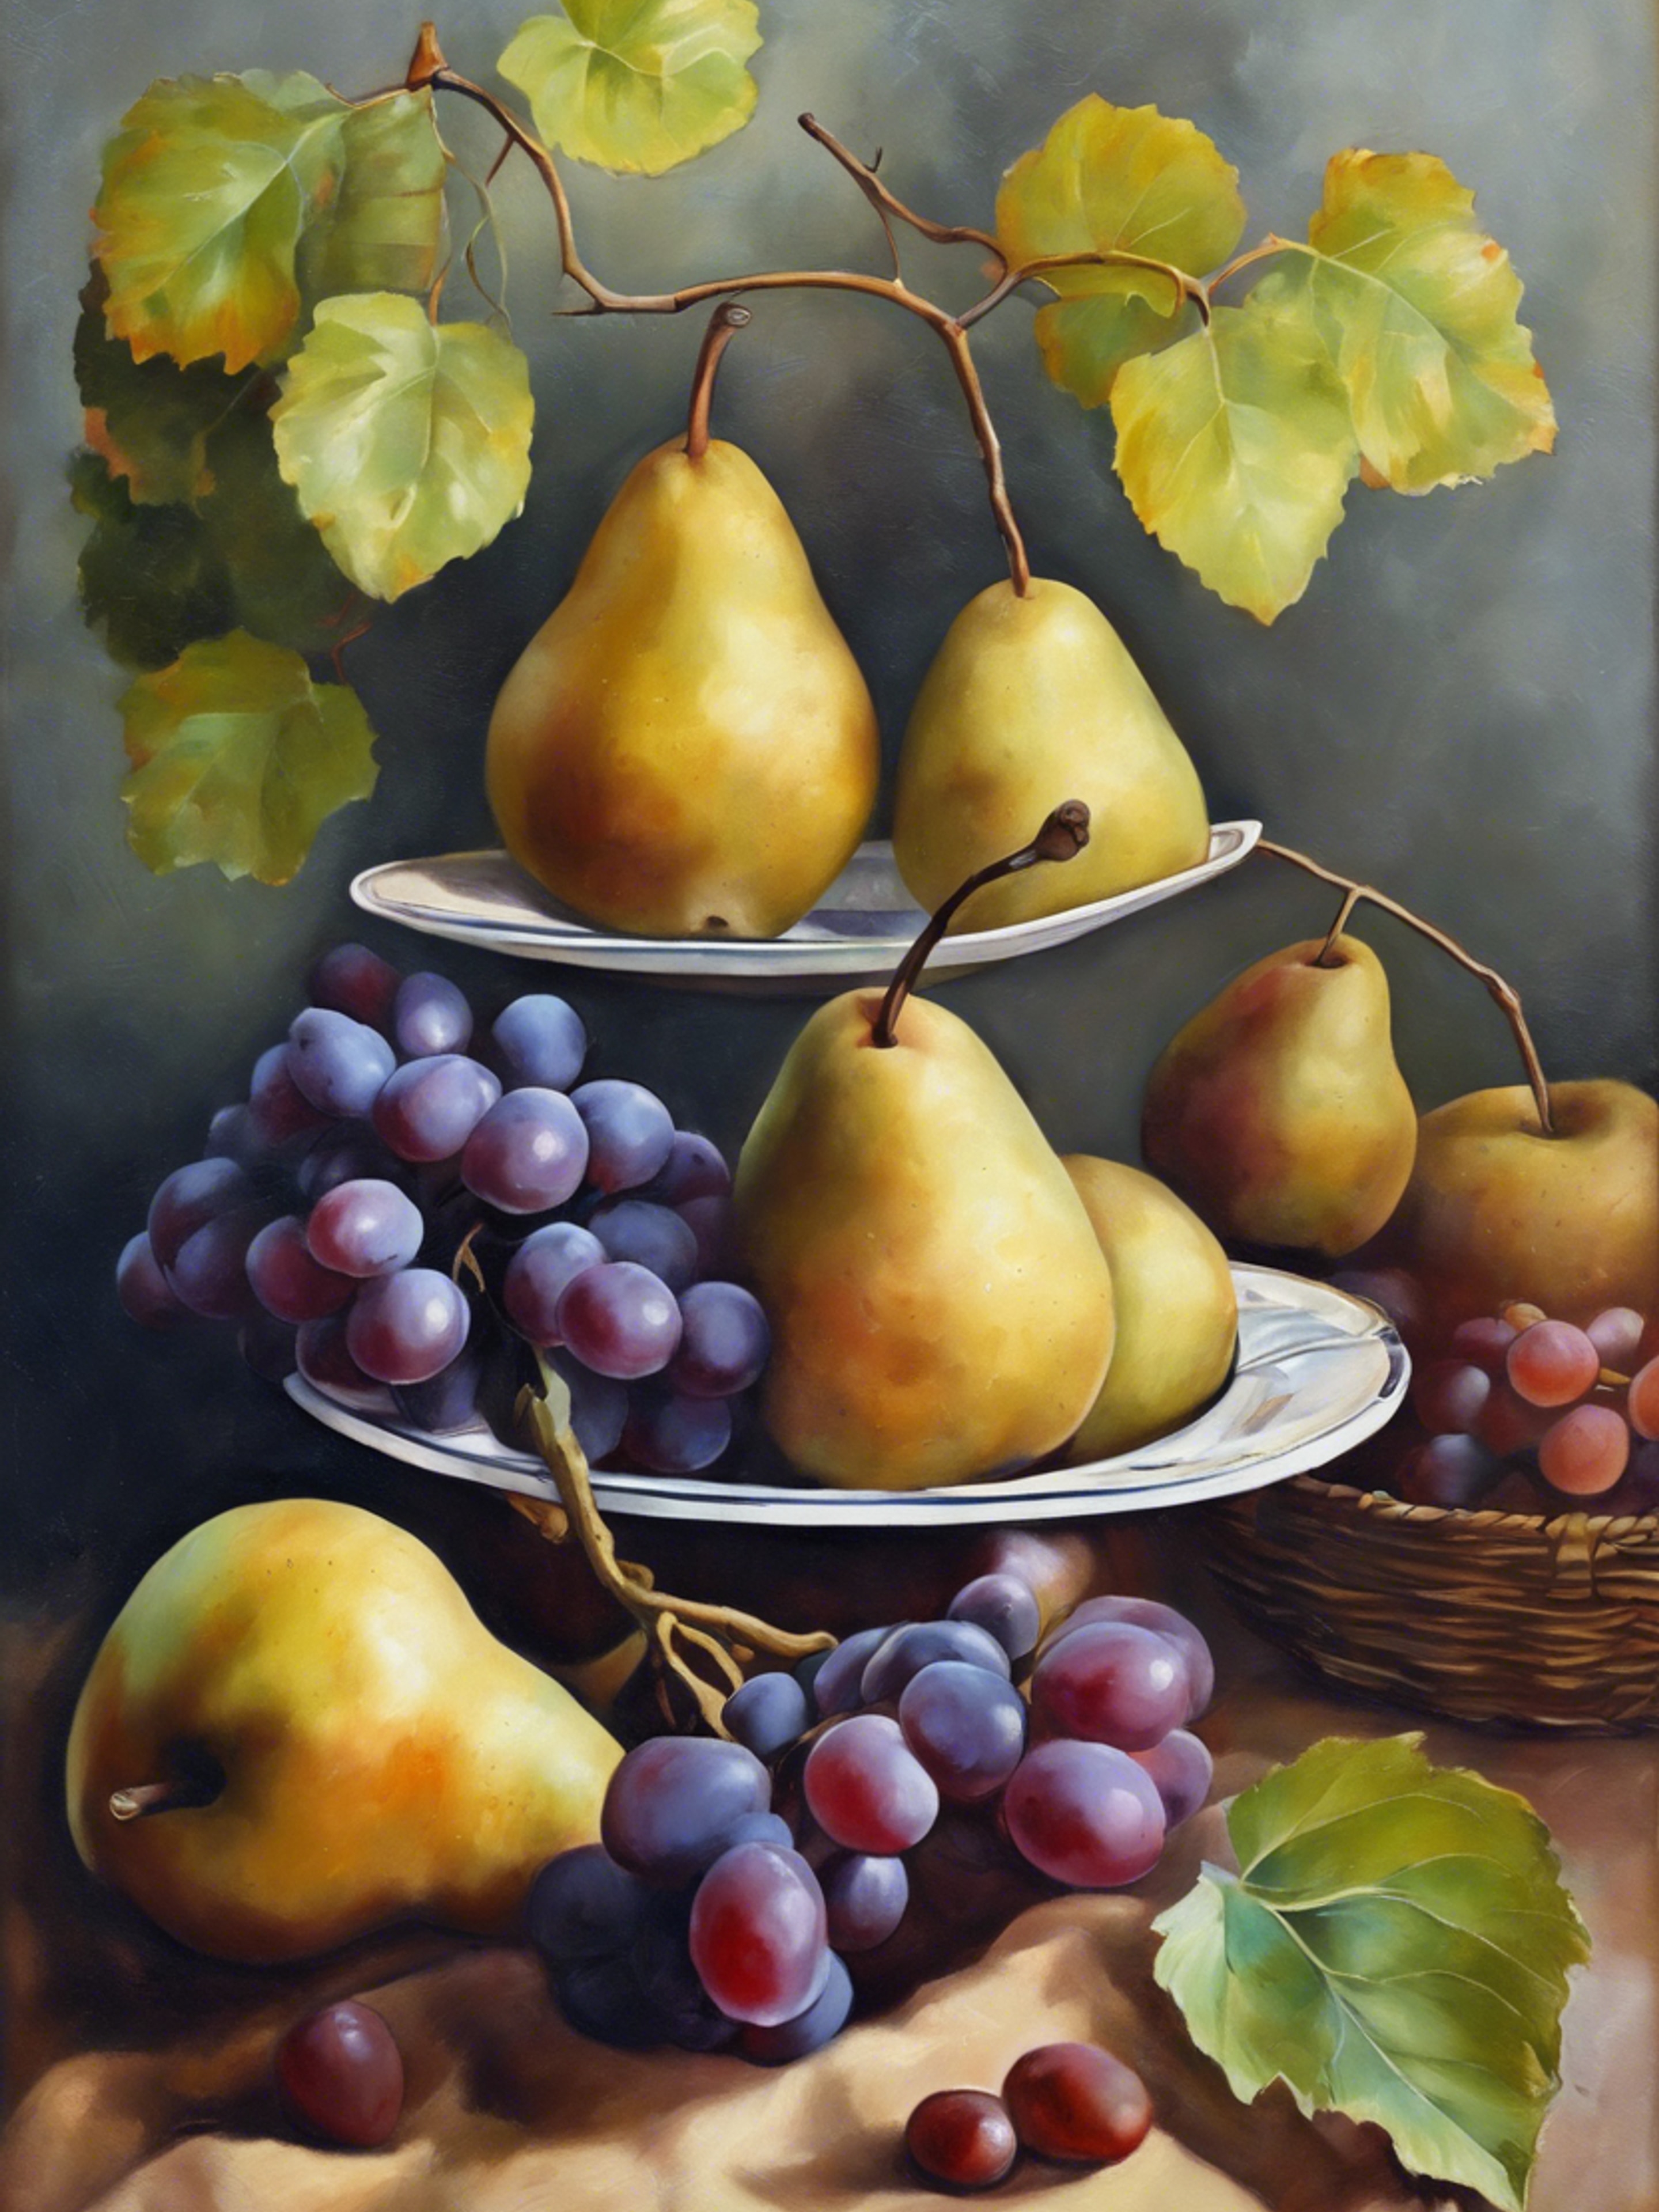 A vintage oil painting showcasing a still life of pears and grapes. duvar kağıdı[9e556c34ce824a50b67f]